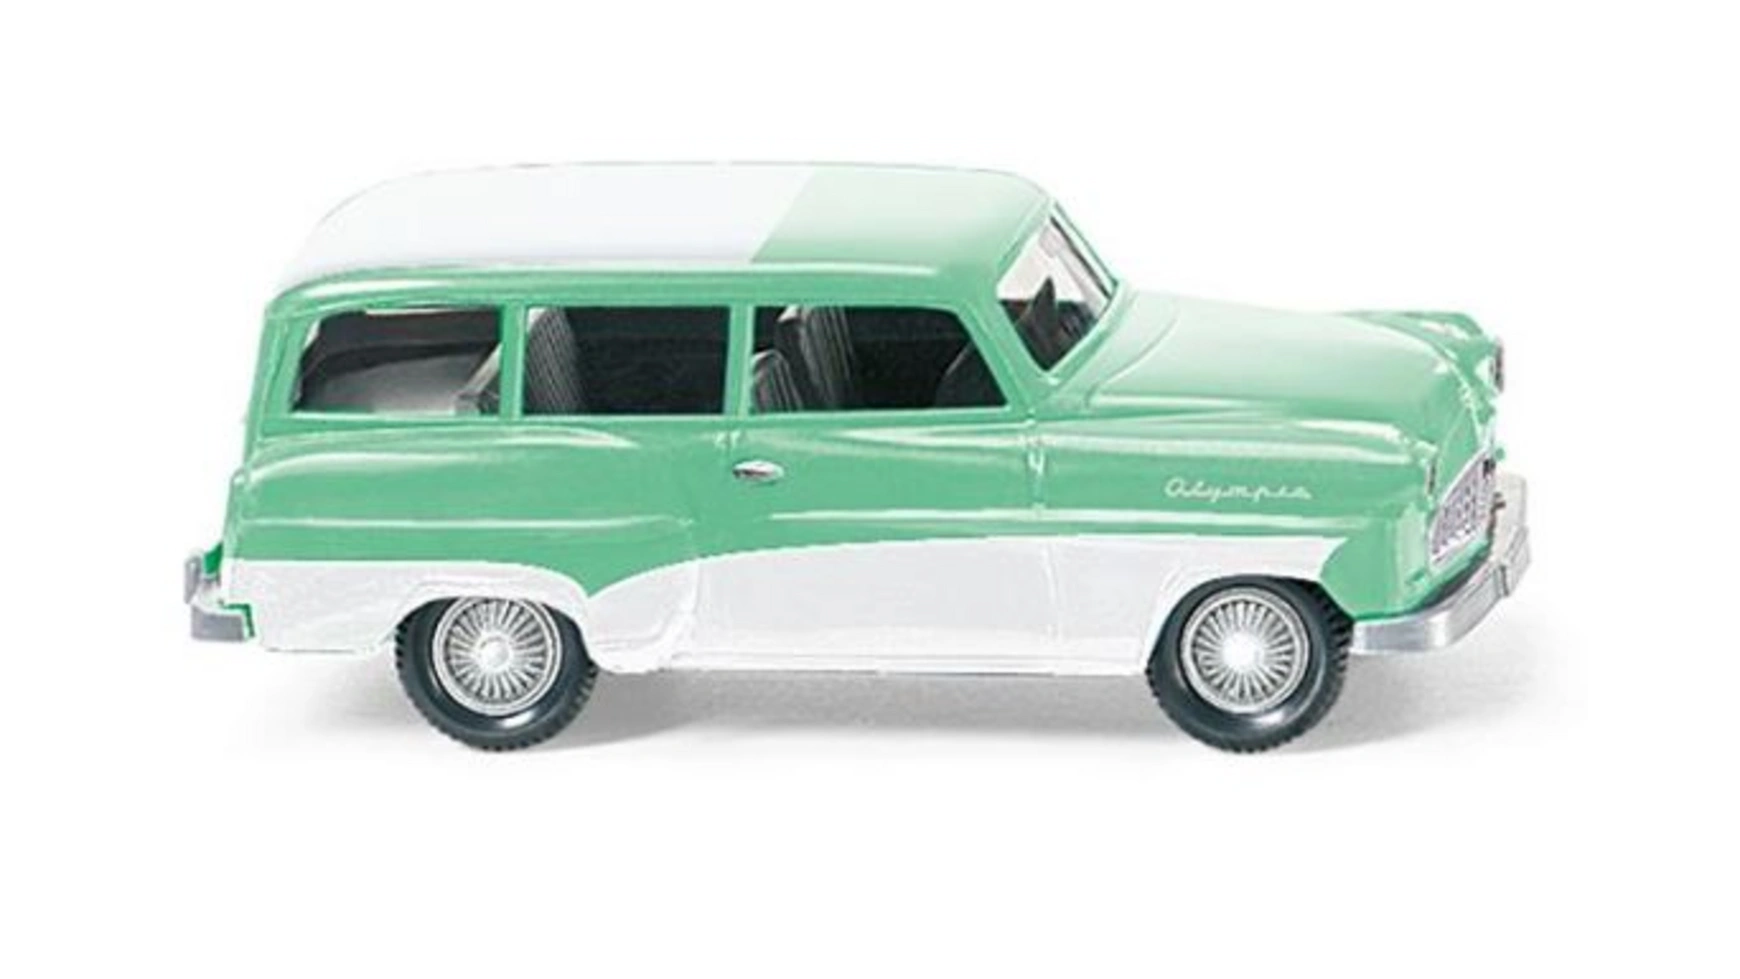 Wiking 1:87 Opel Caravan 1956 мятно-зеленый с белой крышей caravan caravan 180 gram audiophile pressing vinyl lp